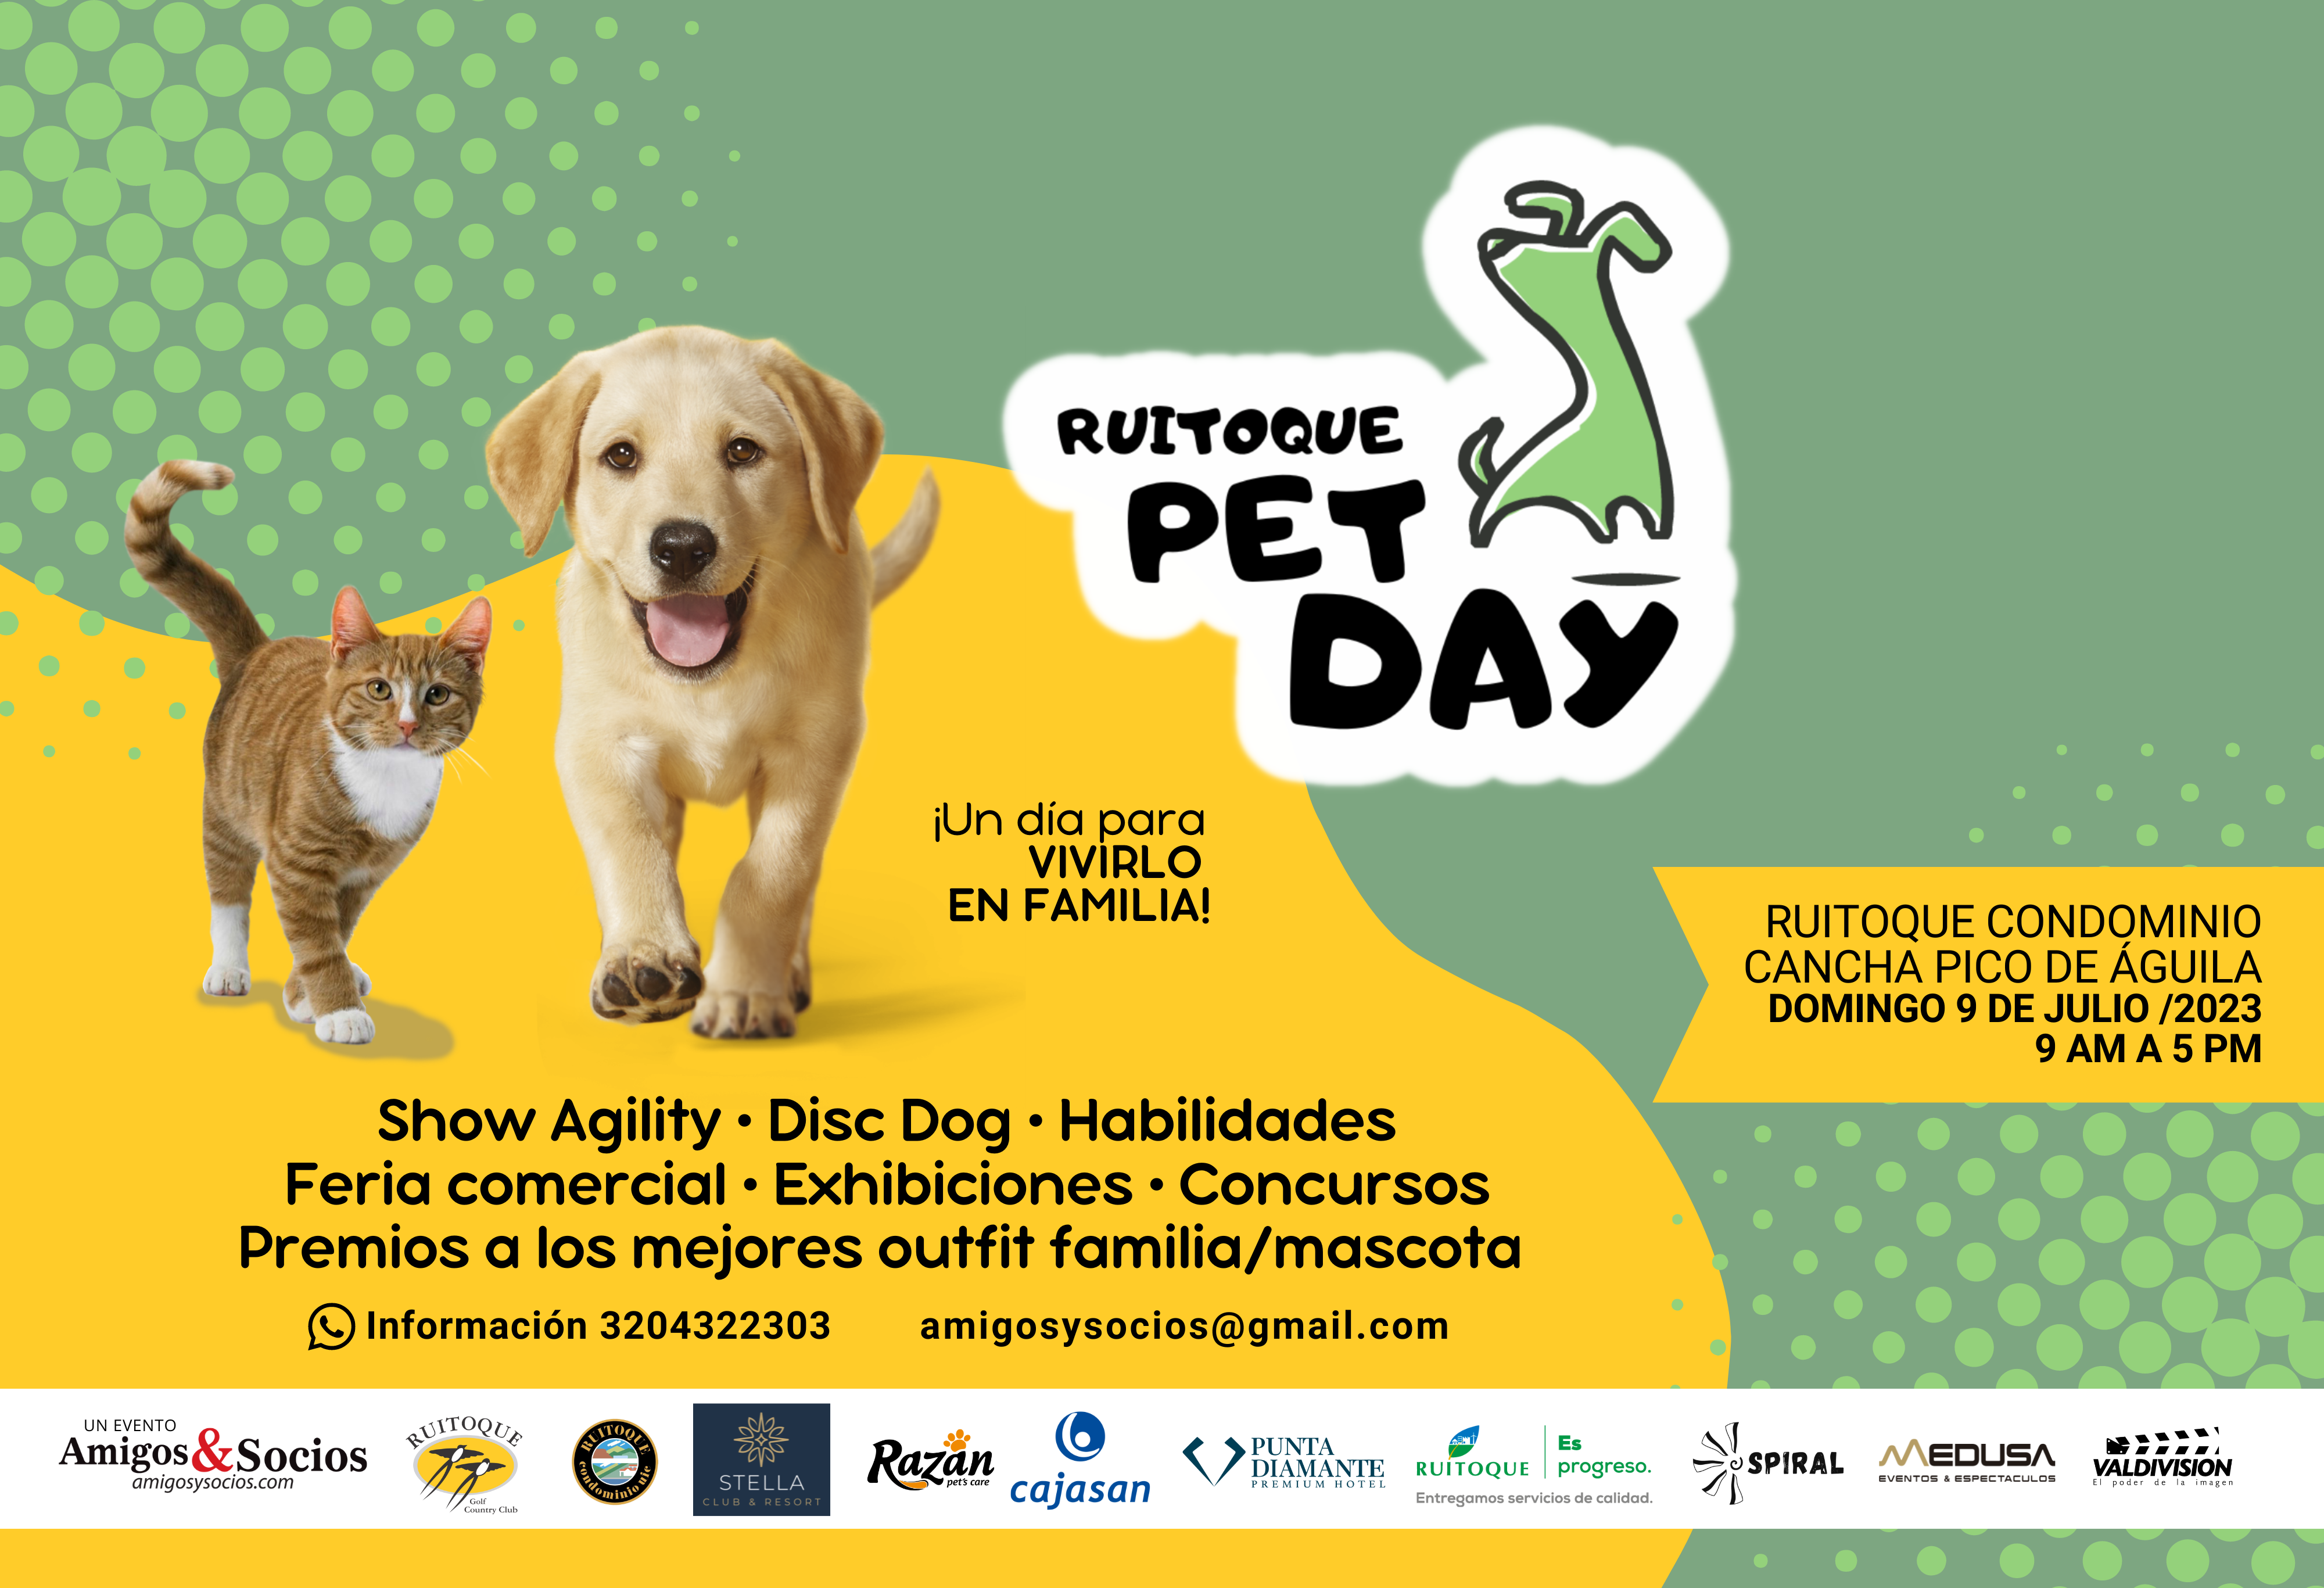 Ruitoque Pet Day: un encuentro que reunirá familias y mascotas del Área Metropolitana